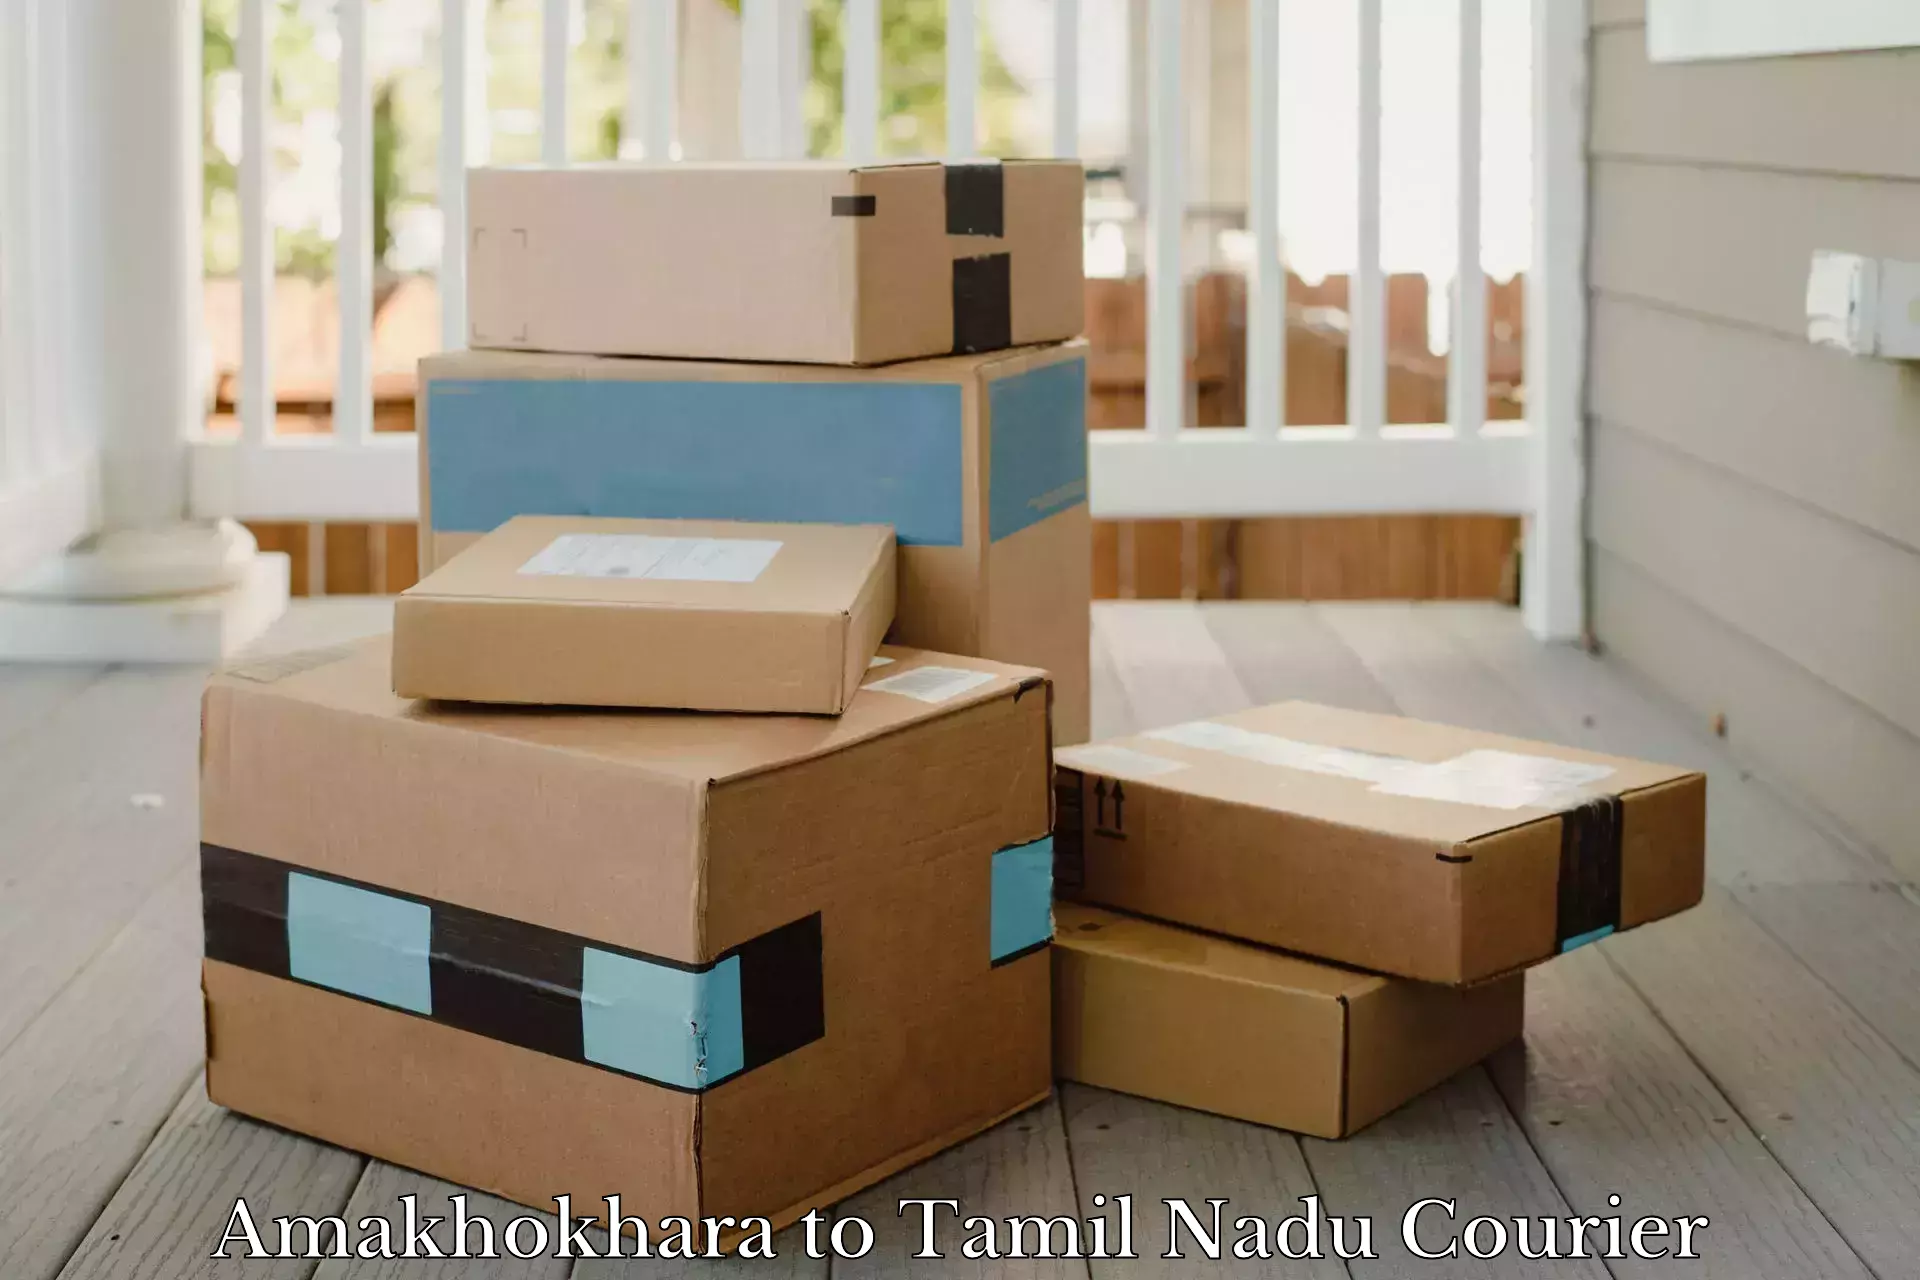 Professional courier handling Amakhokhara to Thoothukudi